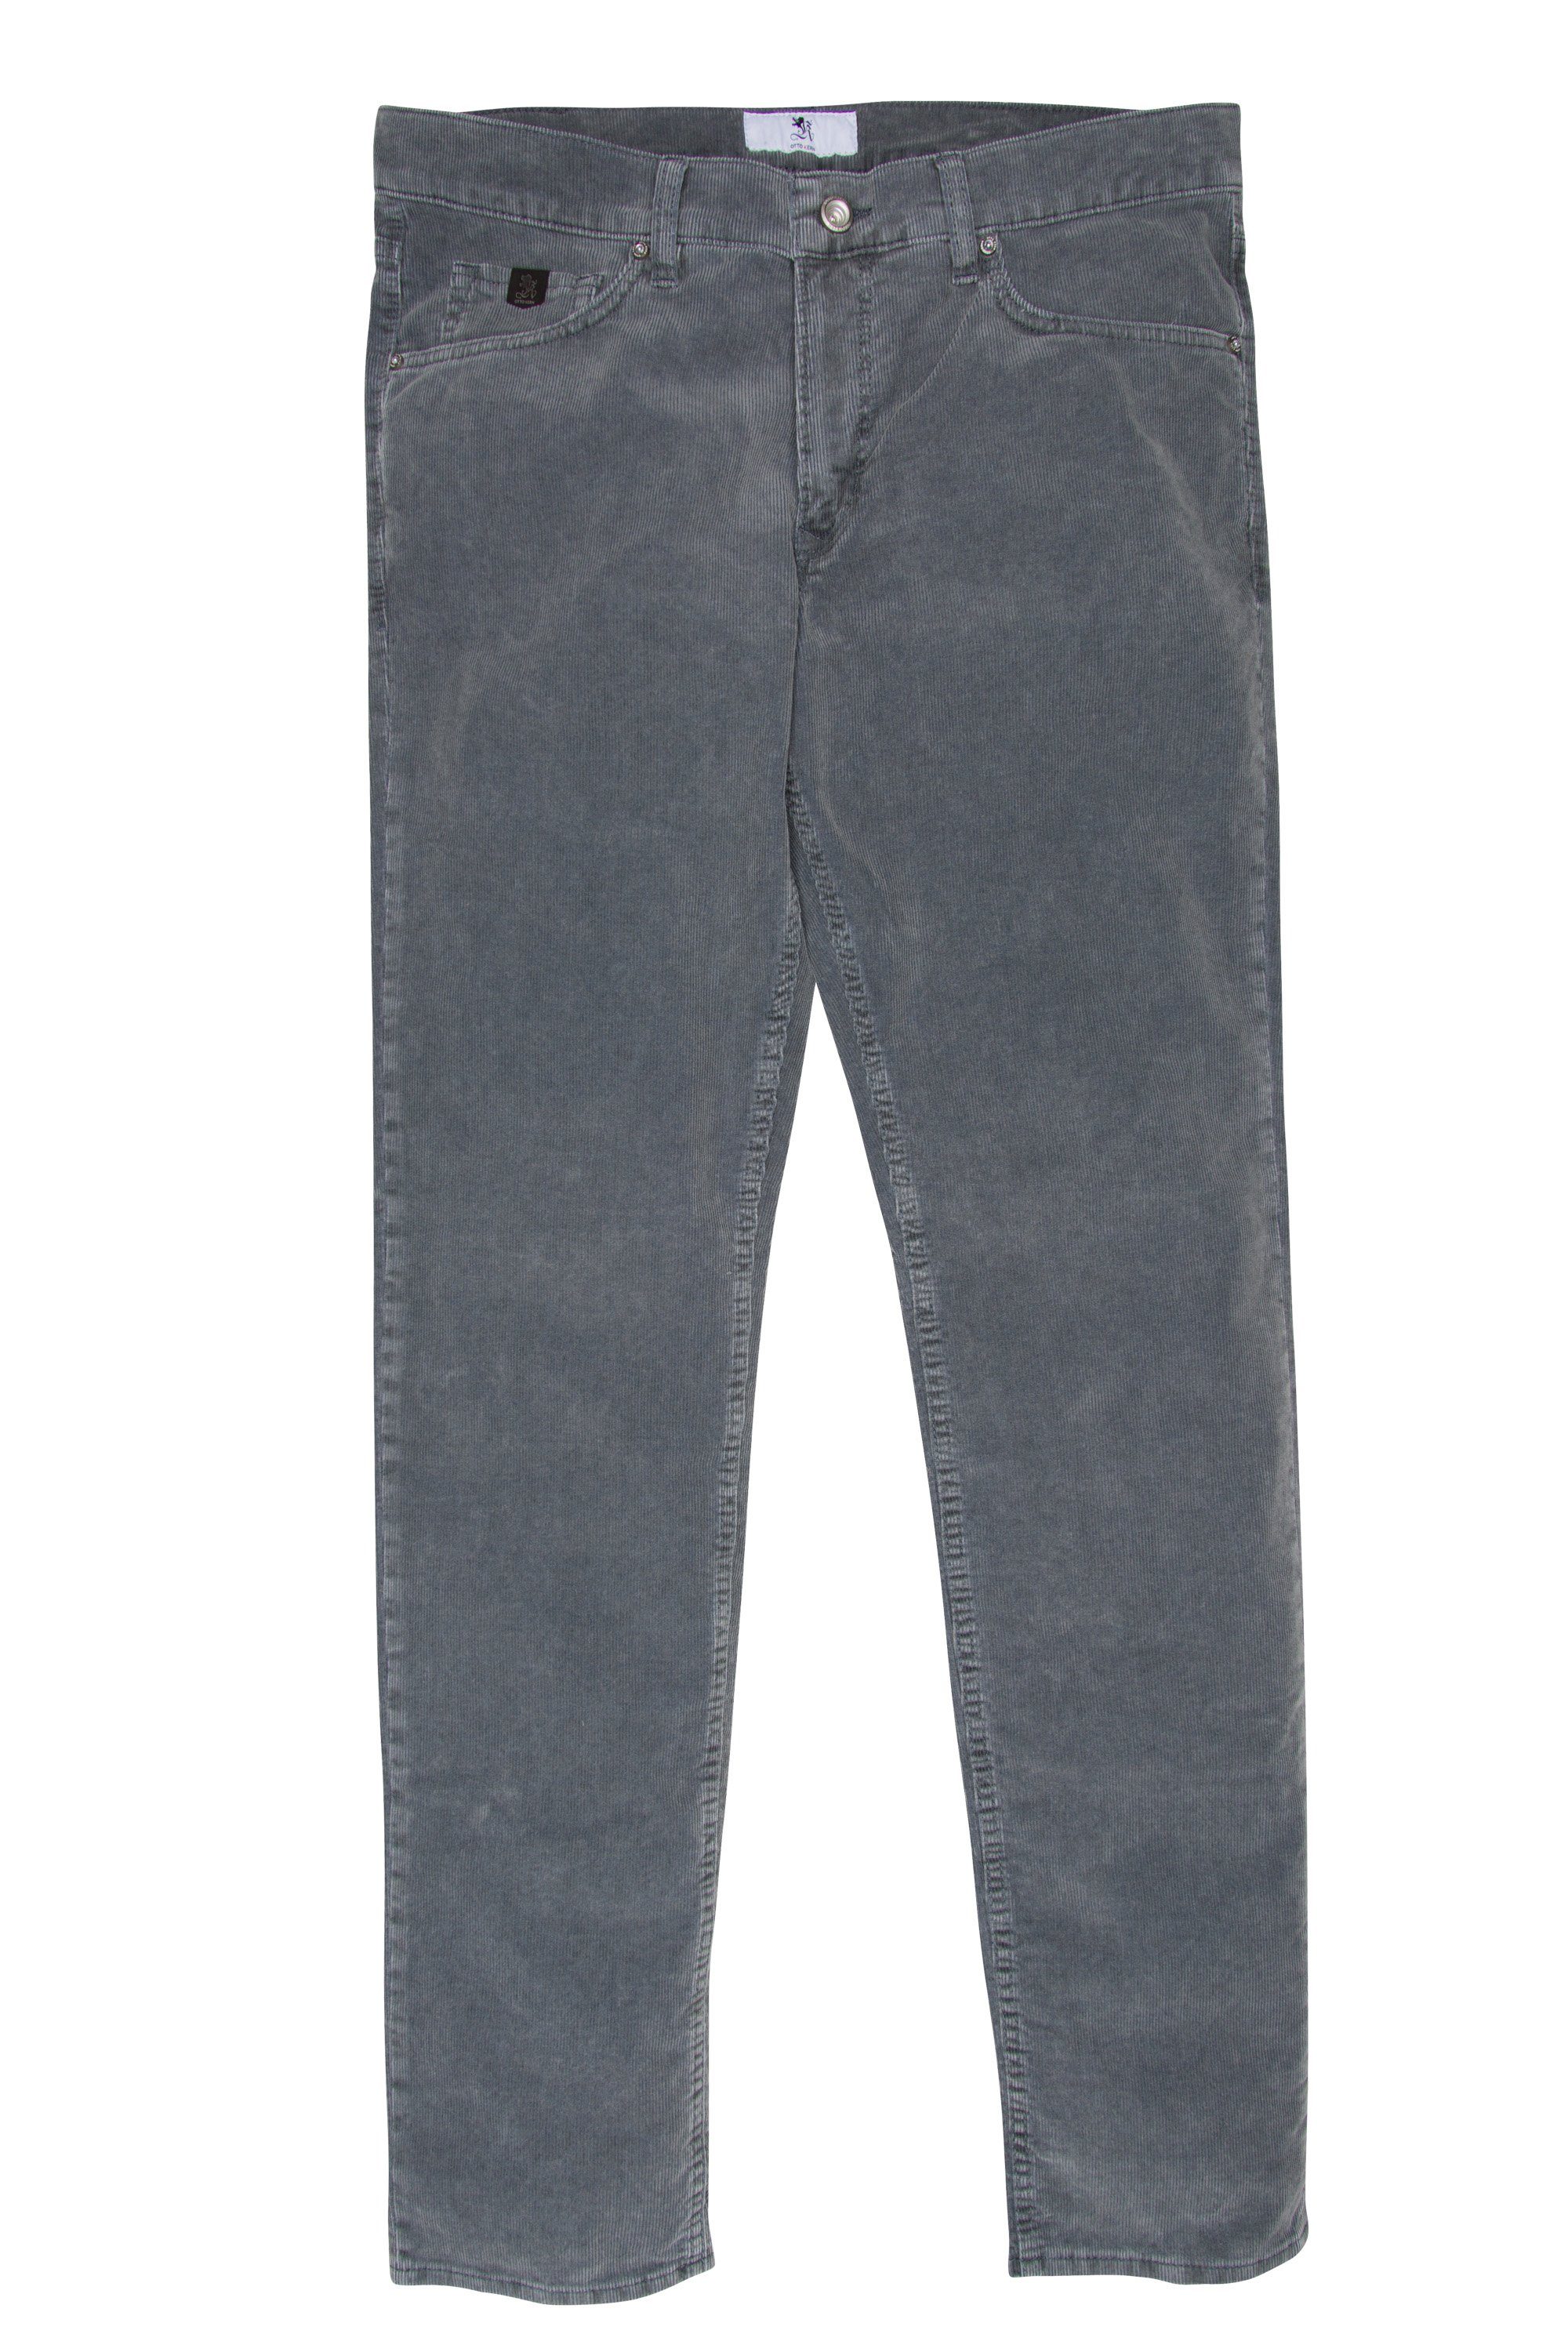  Kern 5-Pocket-Jeans OTTO KERN RAY steel 67014 3201.9007